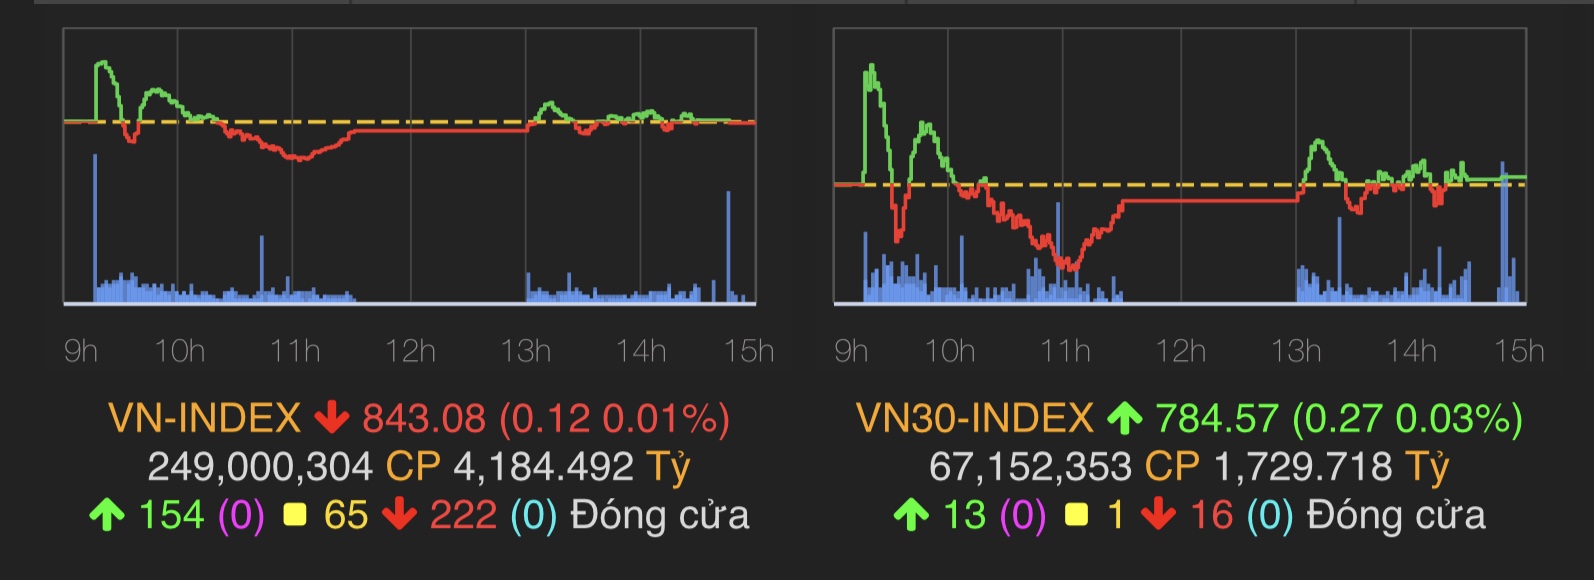 VN-Index giảm điểm nhẹ 0,12 điểm (tương đương 0,01%) về mốc 843,08 điểm.